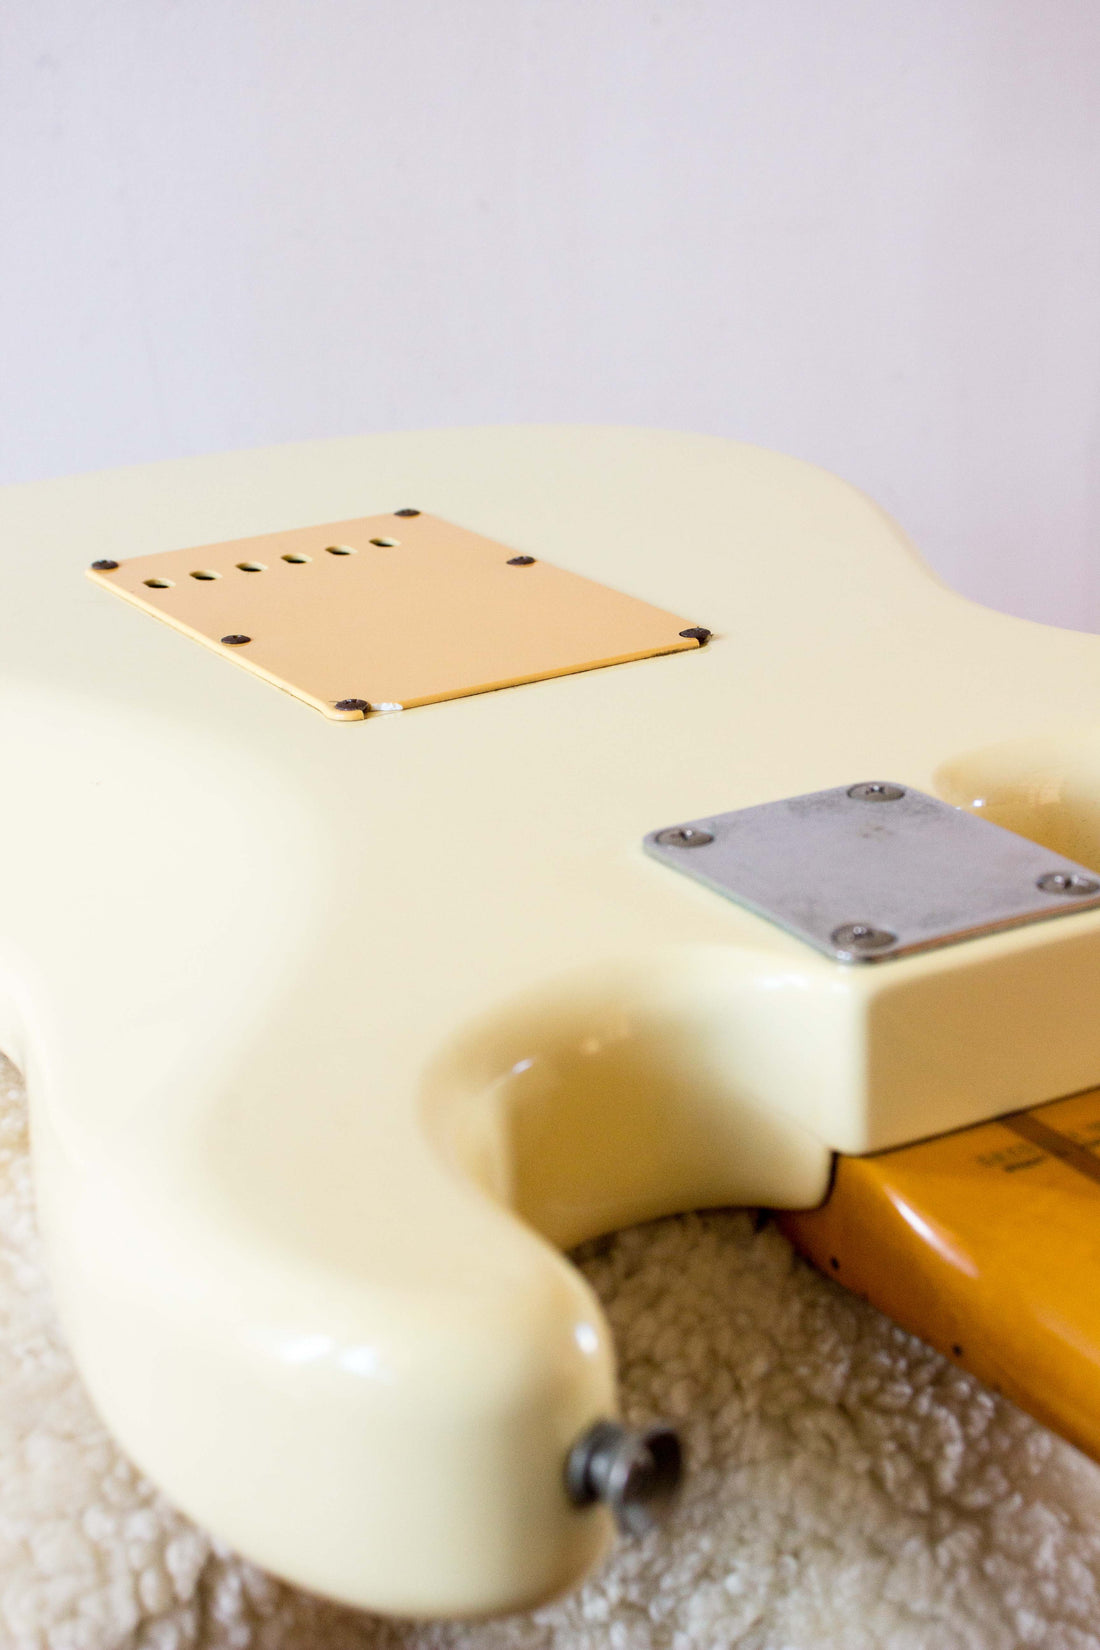 Fender Japan '54 Reissue Stratocaster ST54-115 Vintage White 1987